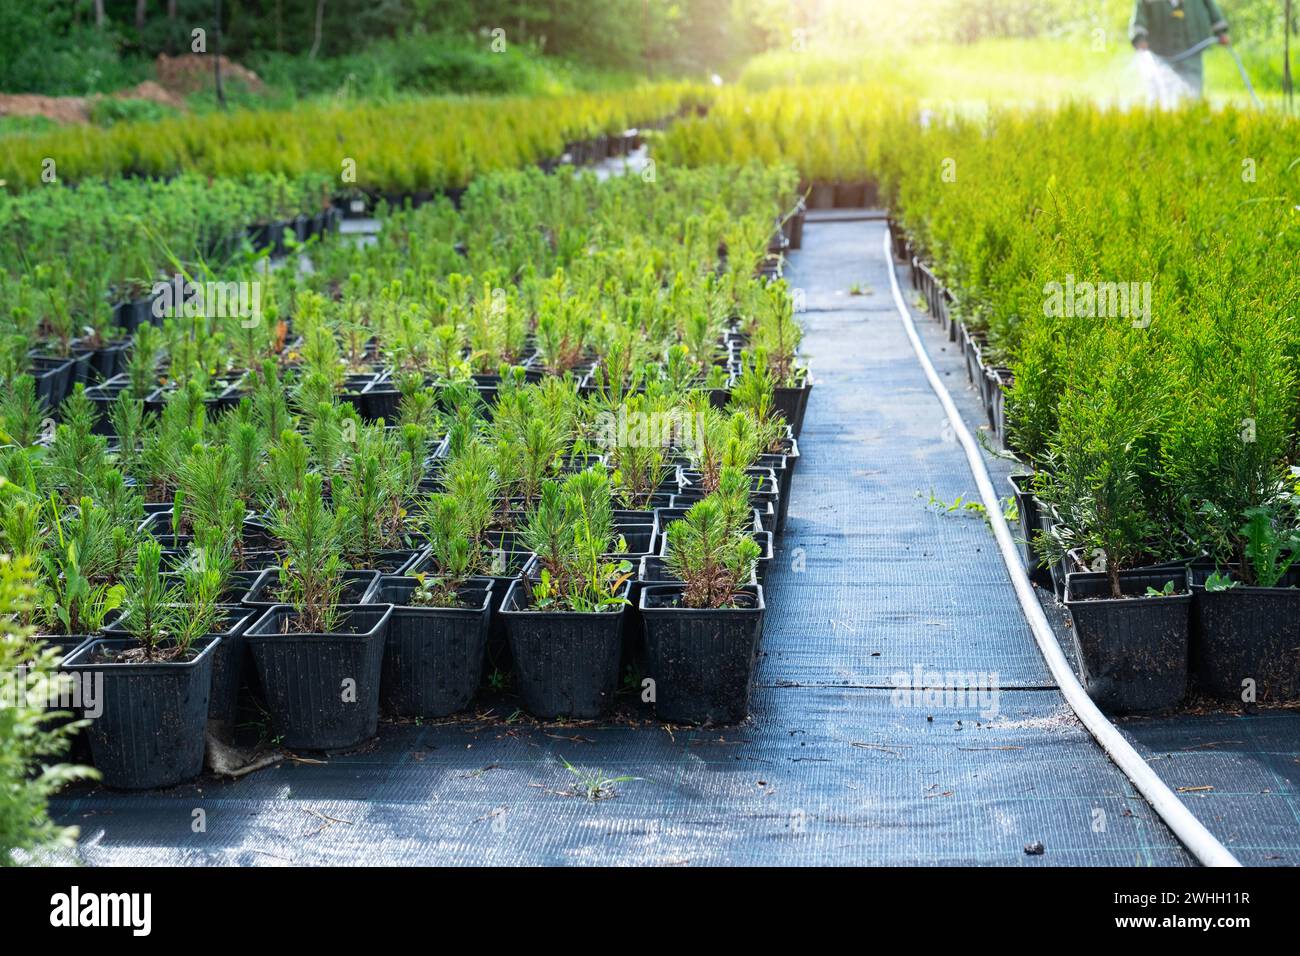 Pépinière de plantes conifères en pots avec une racine fermée pour la plantation sur votre terrain de jardin. Banque D'Images